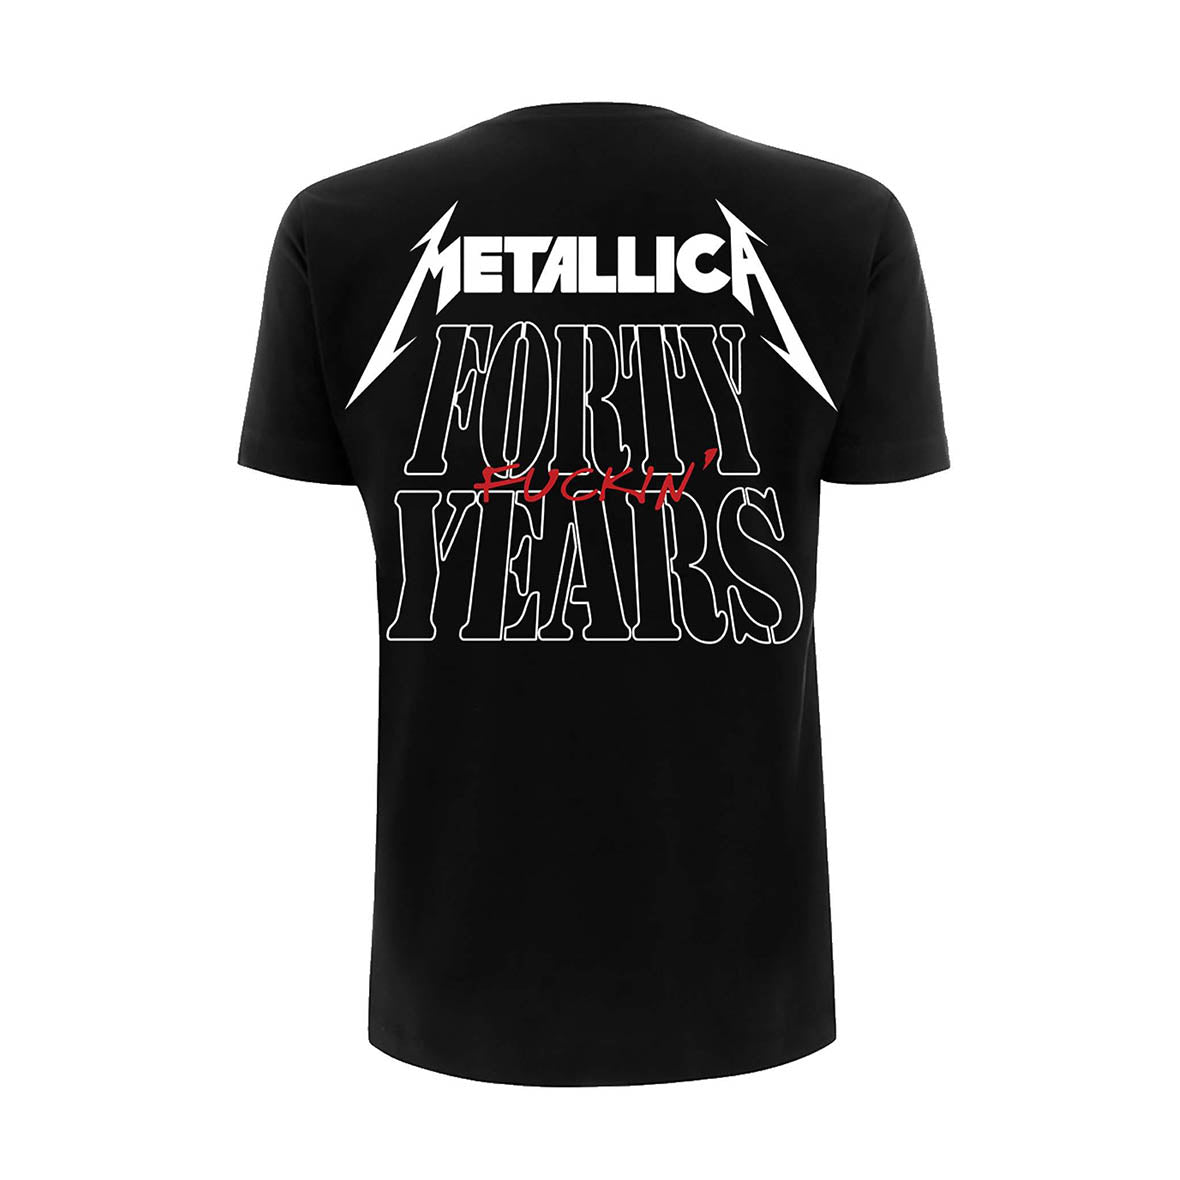 Metallica 40th Anniversary Forty Years T-Shirt